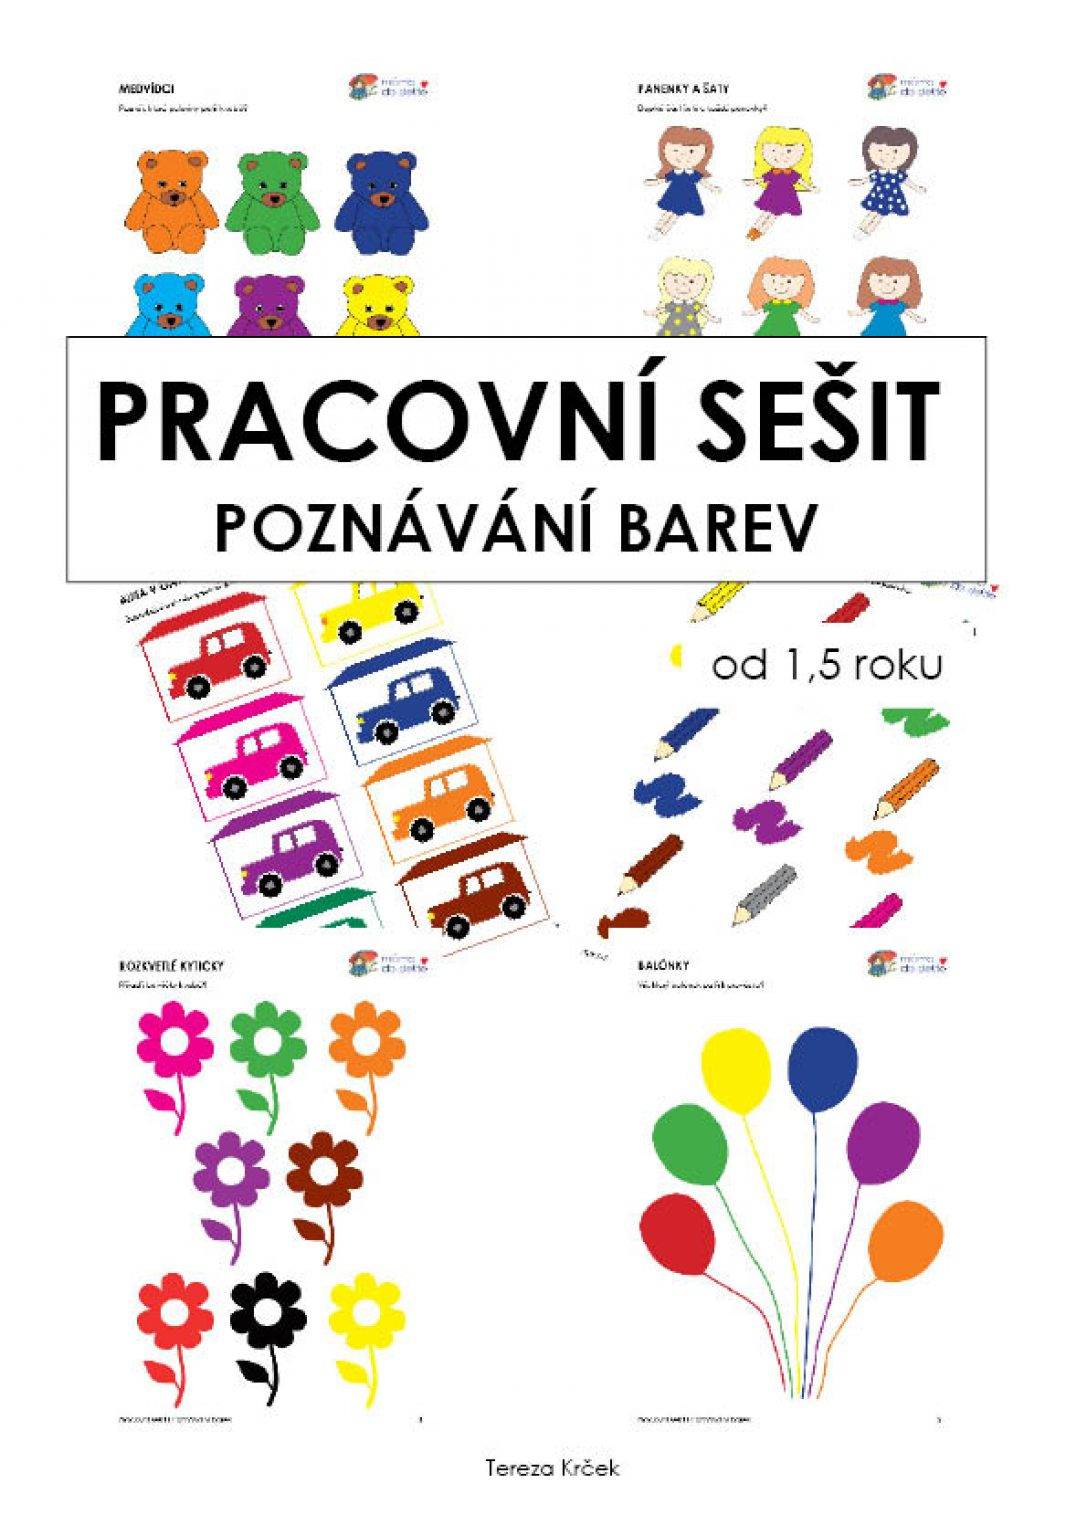 PDF pro děti k vytisknutí Pracovní sešit poznávání barev